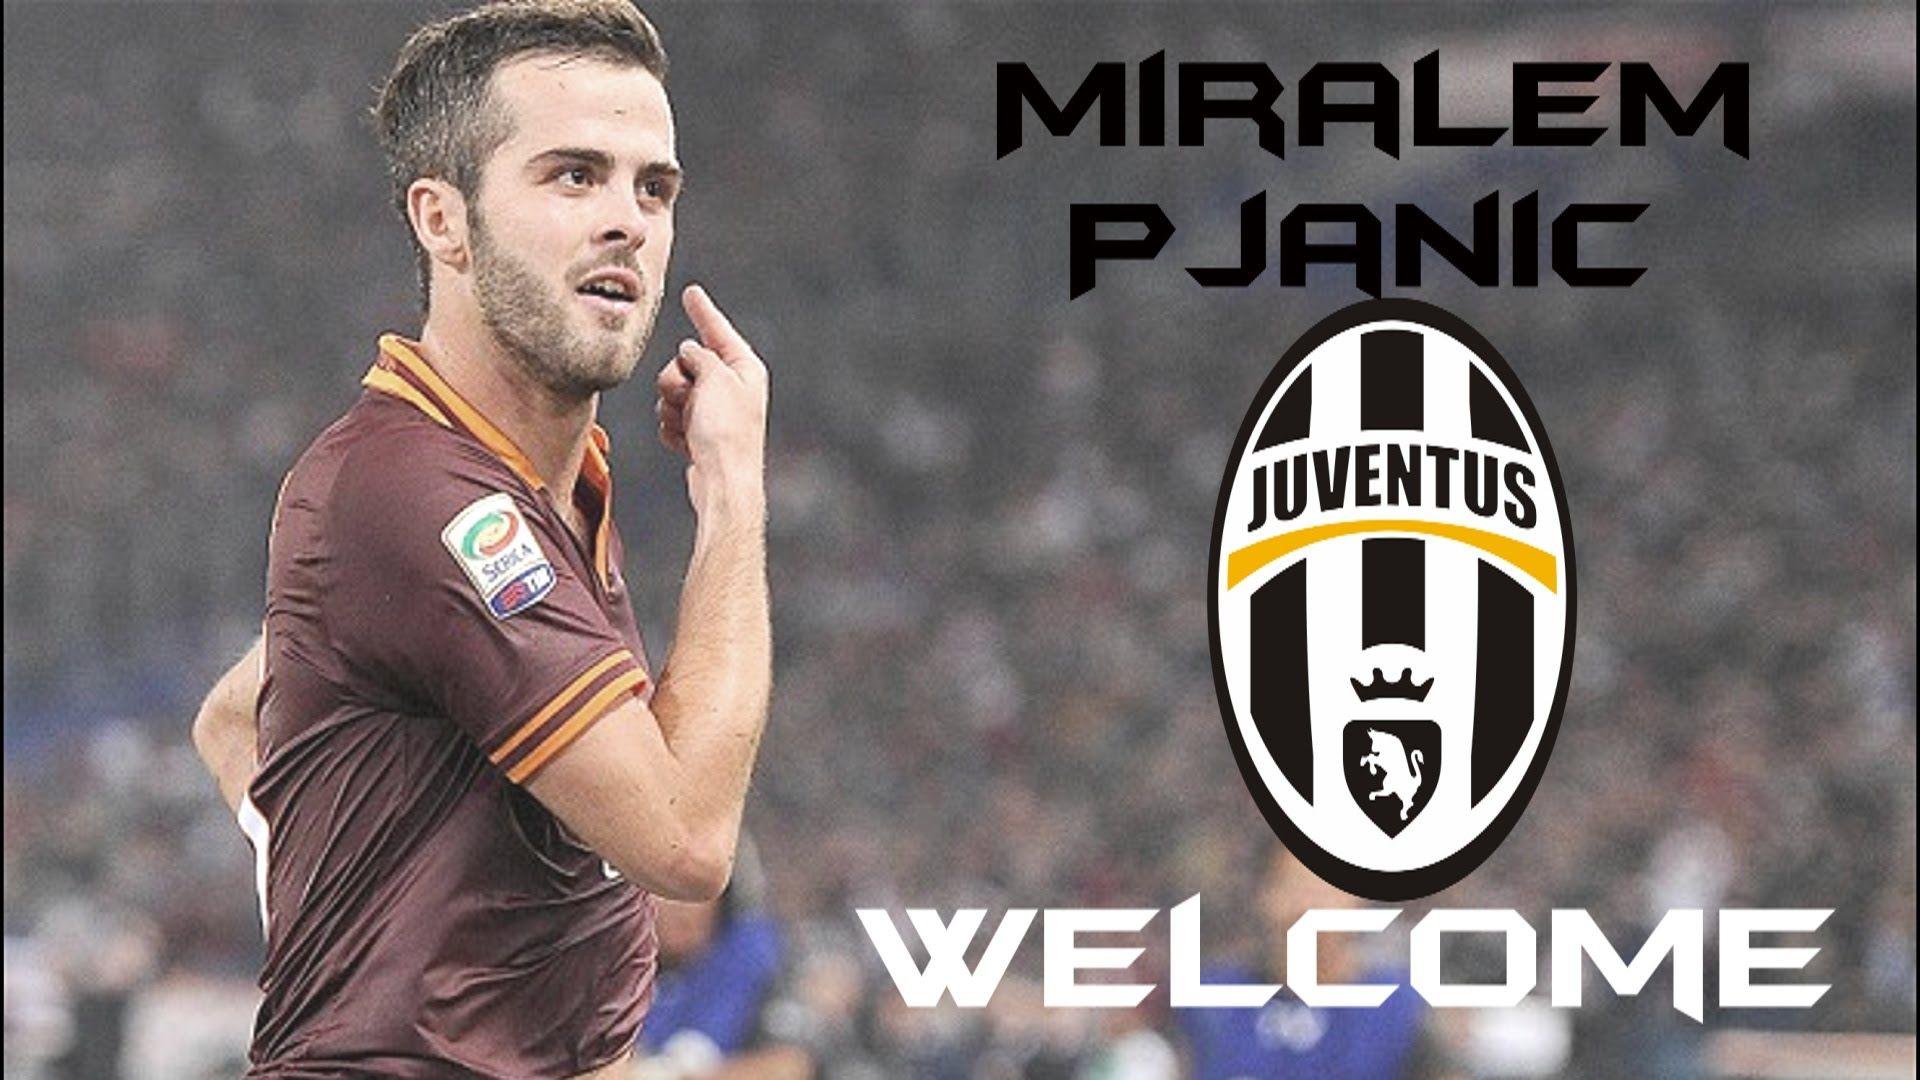 Miralem Pjanic to Juventus